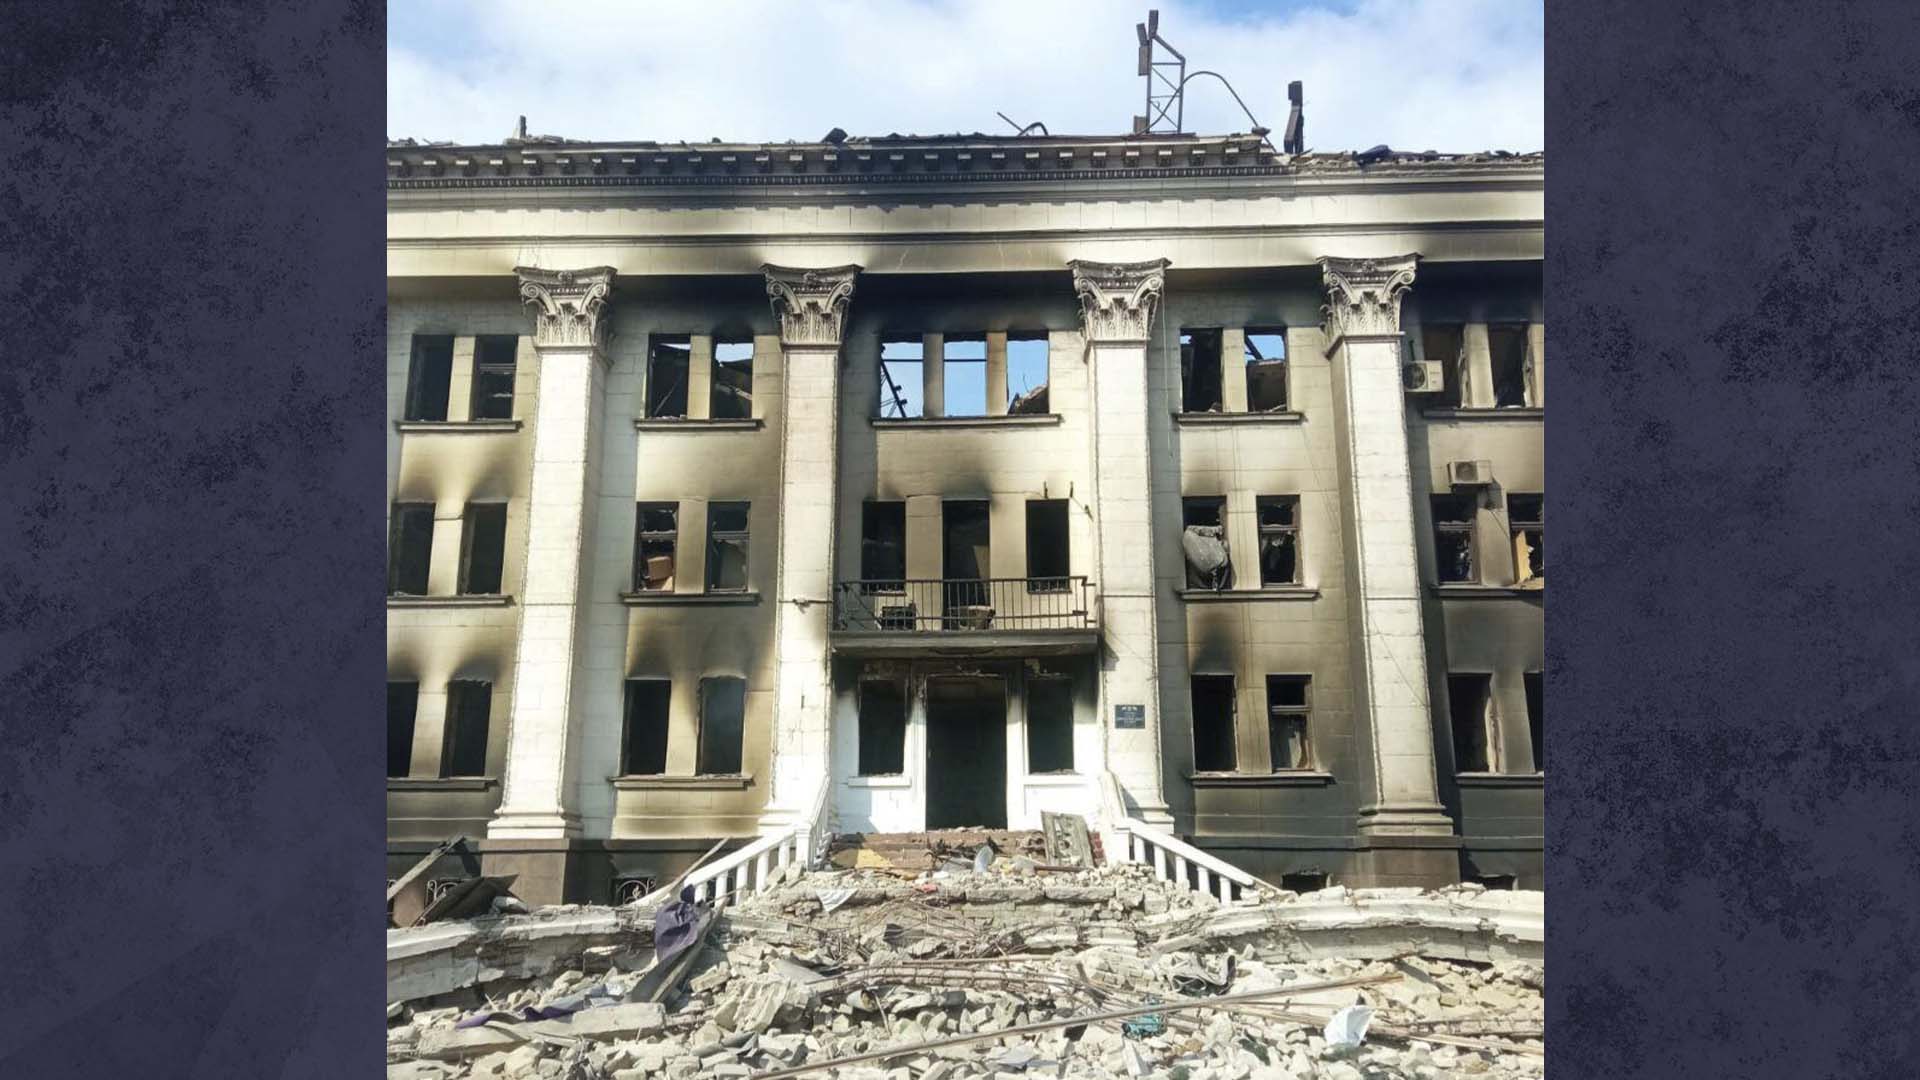 Cette image mise à disposition par le bataillon Azov, montre le théâtre dramatique, endommagé après un bombardement, à Marioupol, en Ukraine, le jeudi 17 mars 2022. 